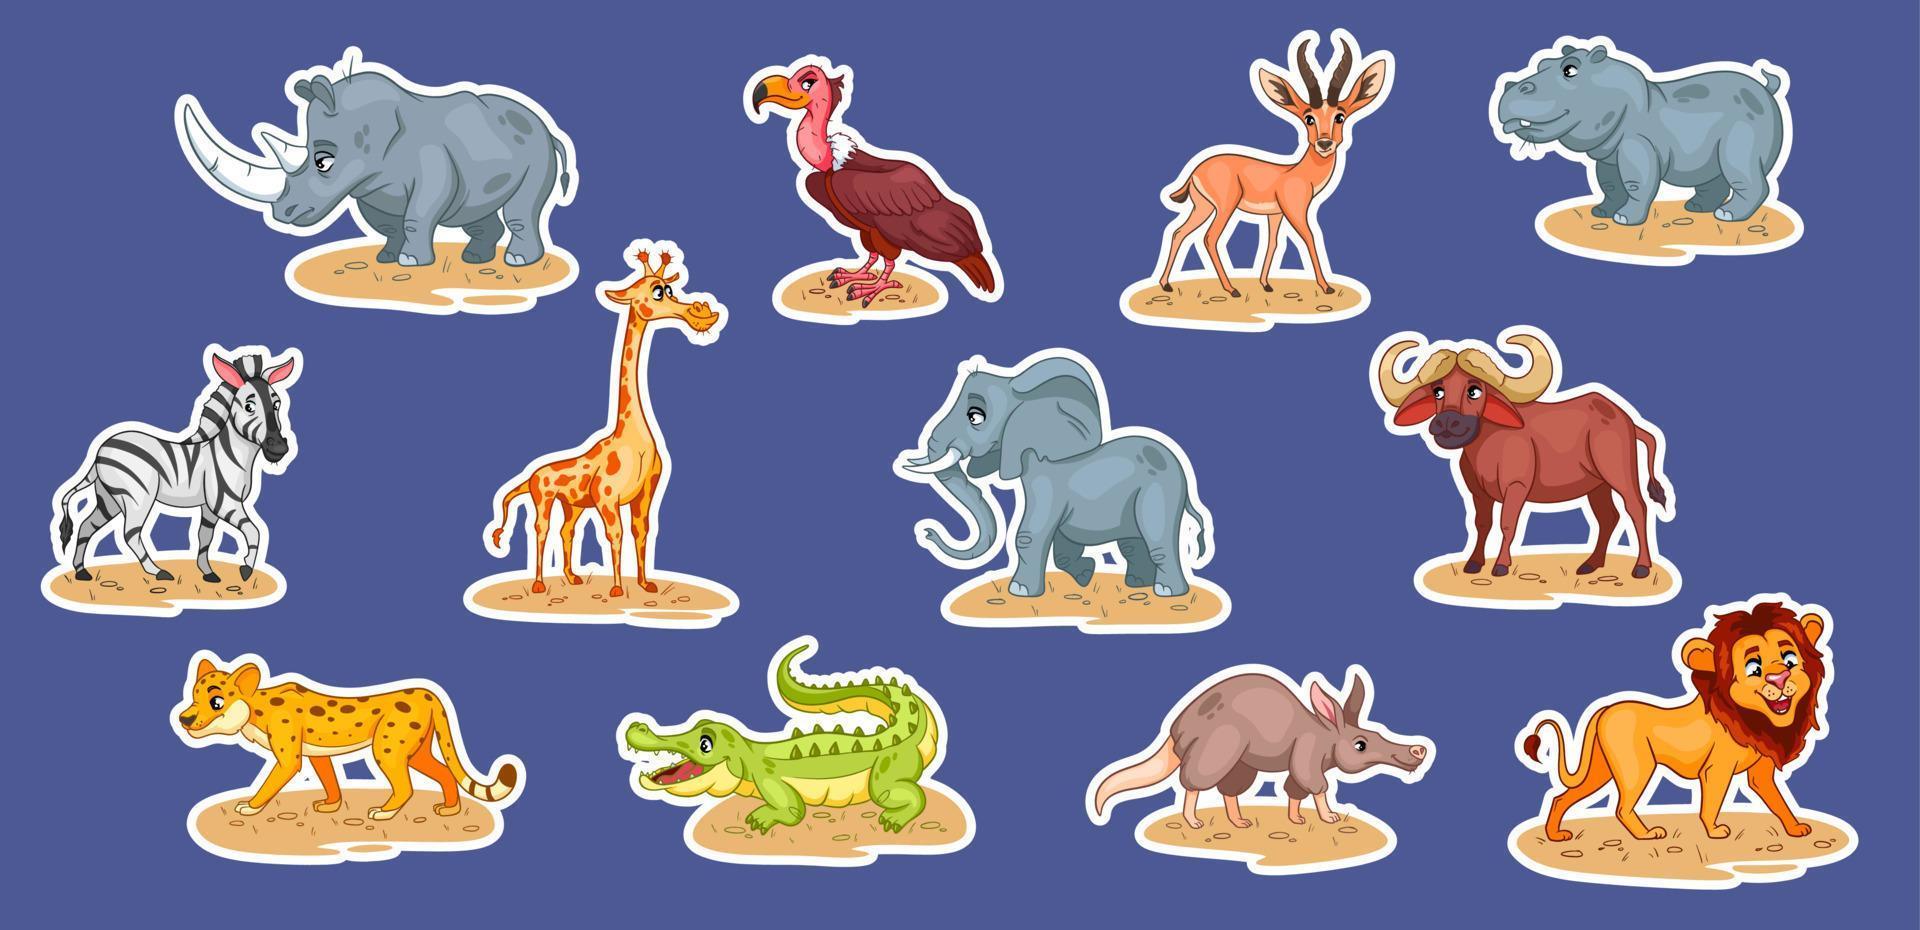 gran conjunto de animales africanos. divertidos personajes de animales en pegatinas de estilo de dibujos animados. vector